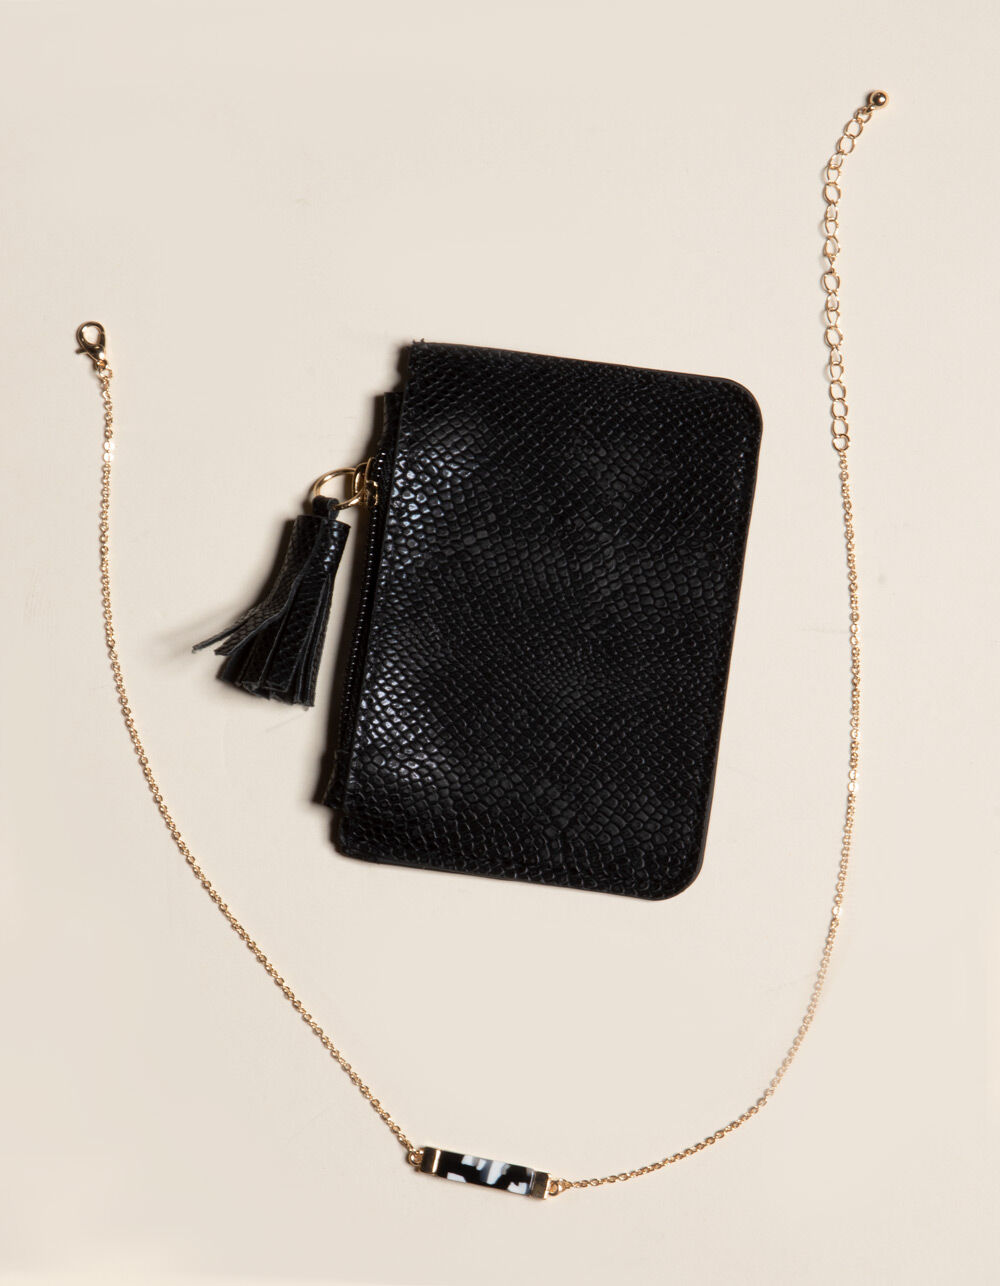 WEST OF MELROSE Black Wallet & Necklace Gift Set - BLACK | Tillys